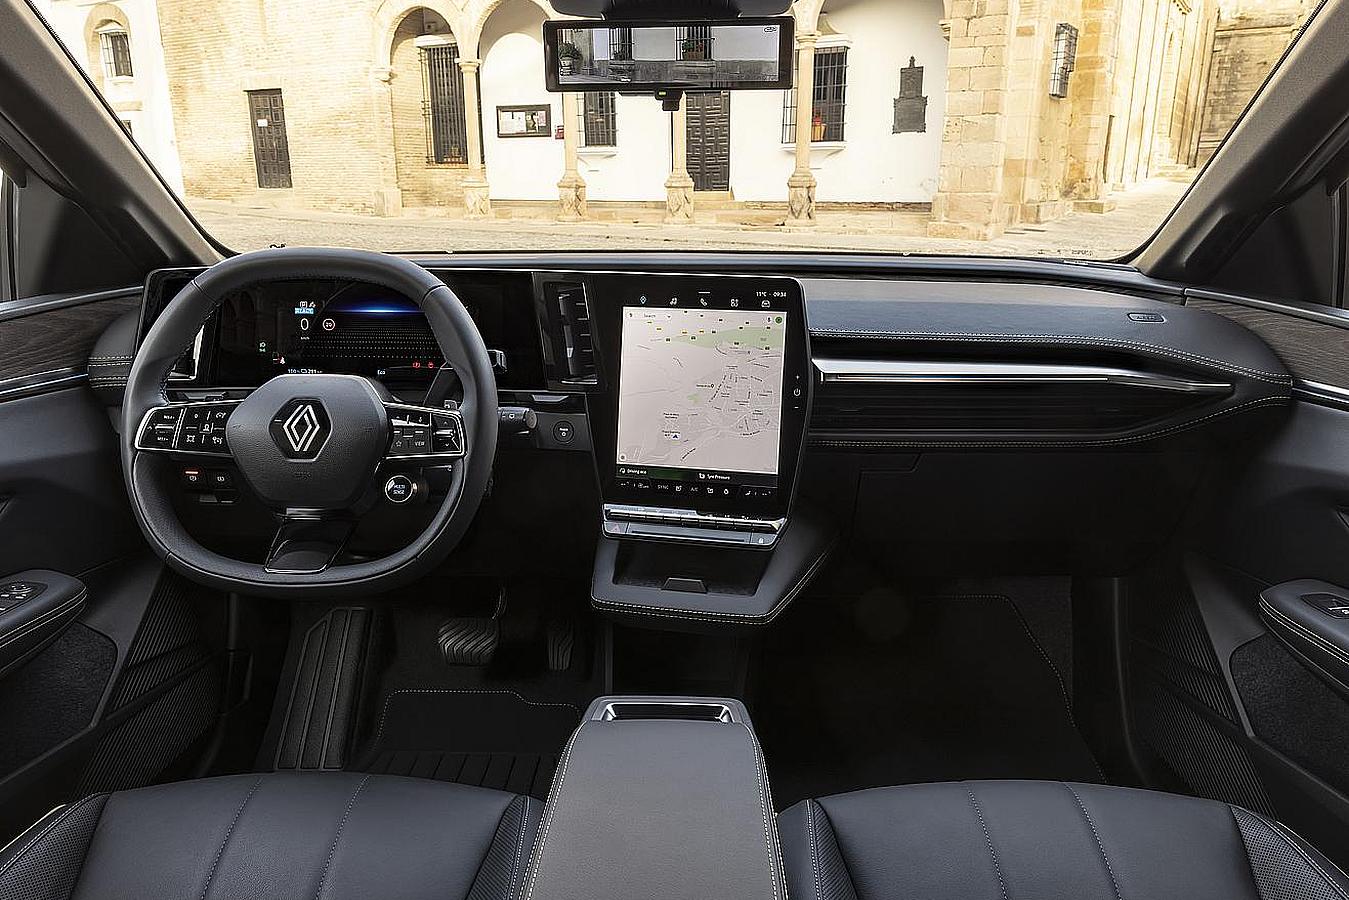 Nuevo Renault Megane E-TECH 100% eléctrico: el SUV con hasta 470 km de autonomía y asistente Google de serie